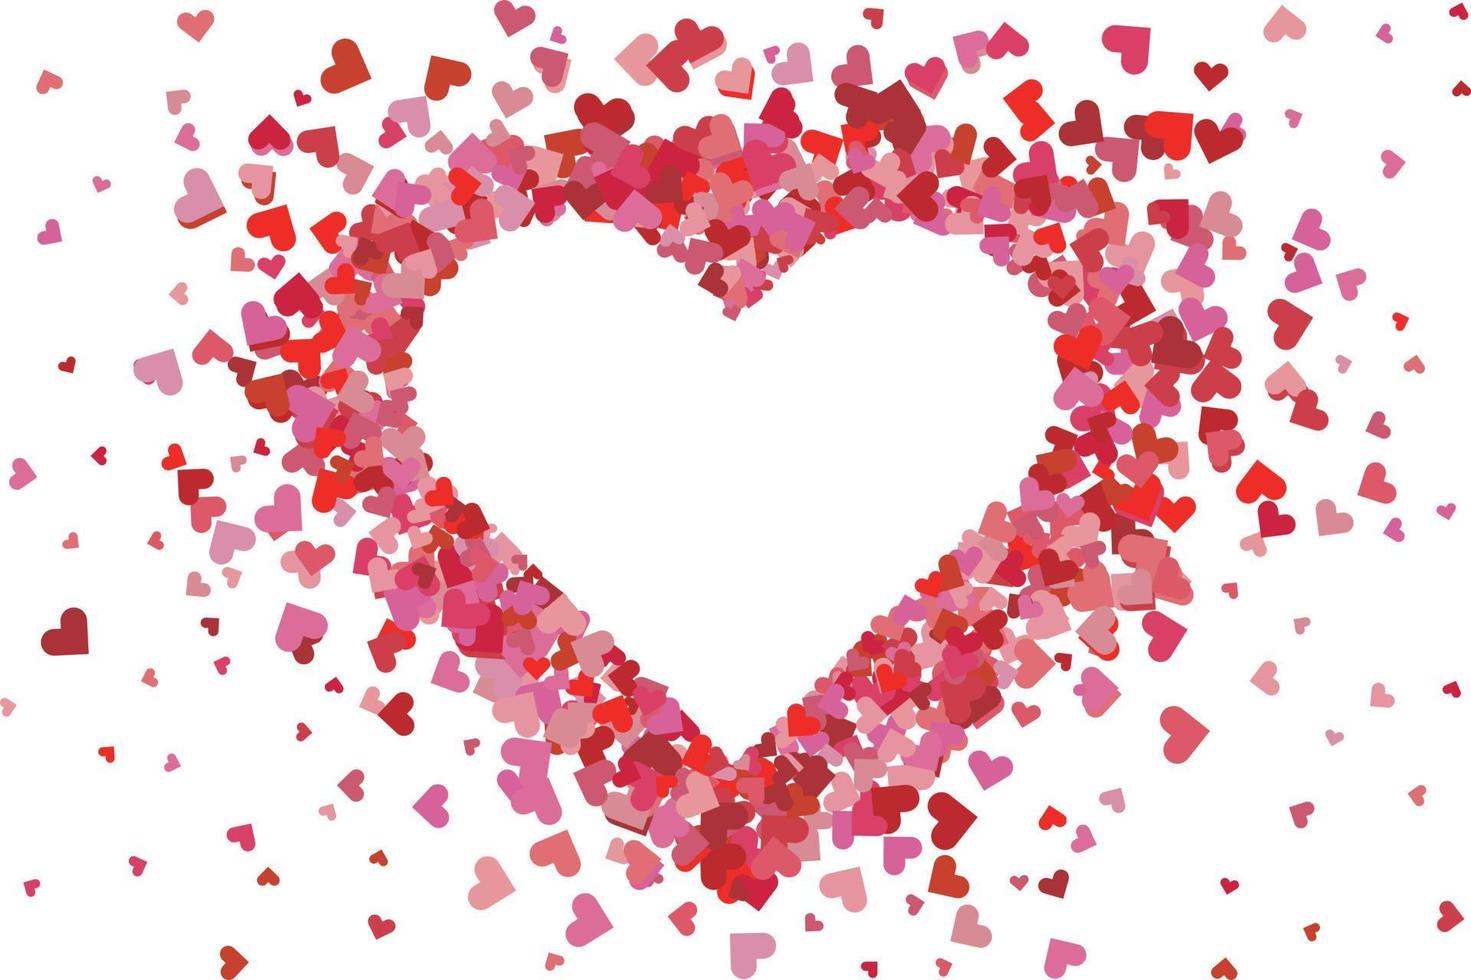 confeti en forma de corazón. marco encantador del día de san valentín feliz, tarjeta de felicitación de aniversario de boda con forma de papel de confeti rojo encantador de fondo de ilustración de corazón. telón de fondo romántico creativo vector